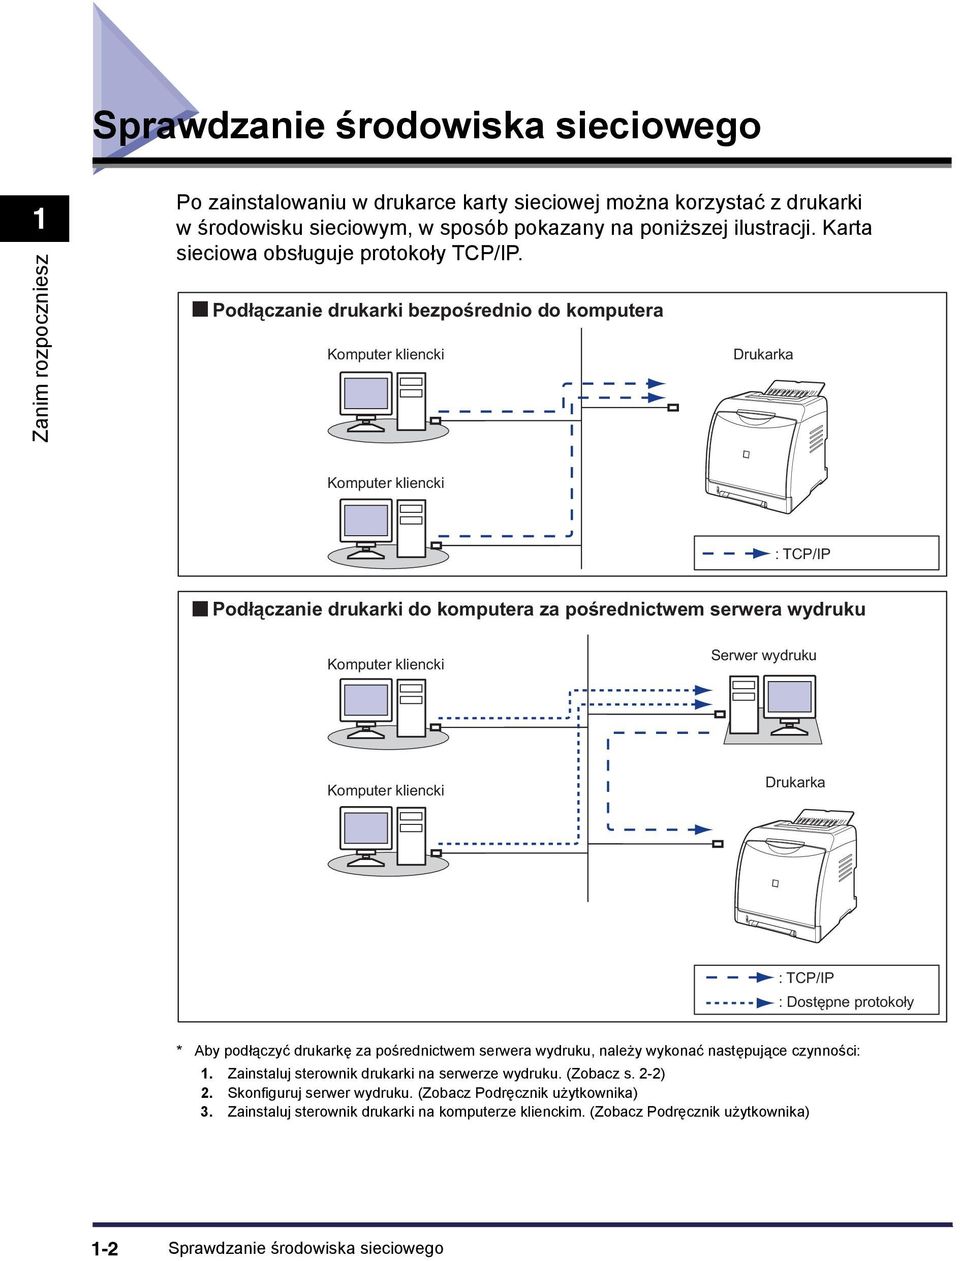 Podłączanie drukarki bezpośrednio do komputera Komputer kliencki Drukarka Komputer kliencki : TCP/IP Podłączanie drukarki do komputera za pośrednictwem serwera wydruku Komputer kliencki Serwer